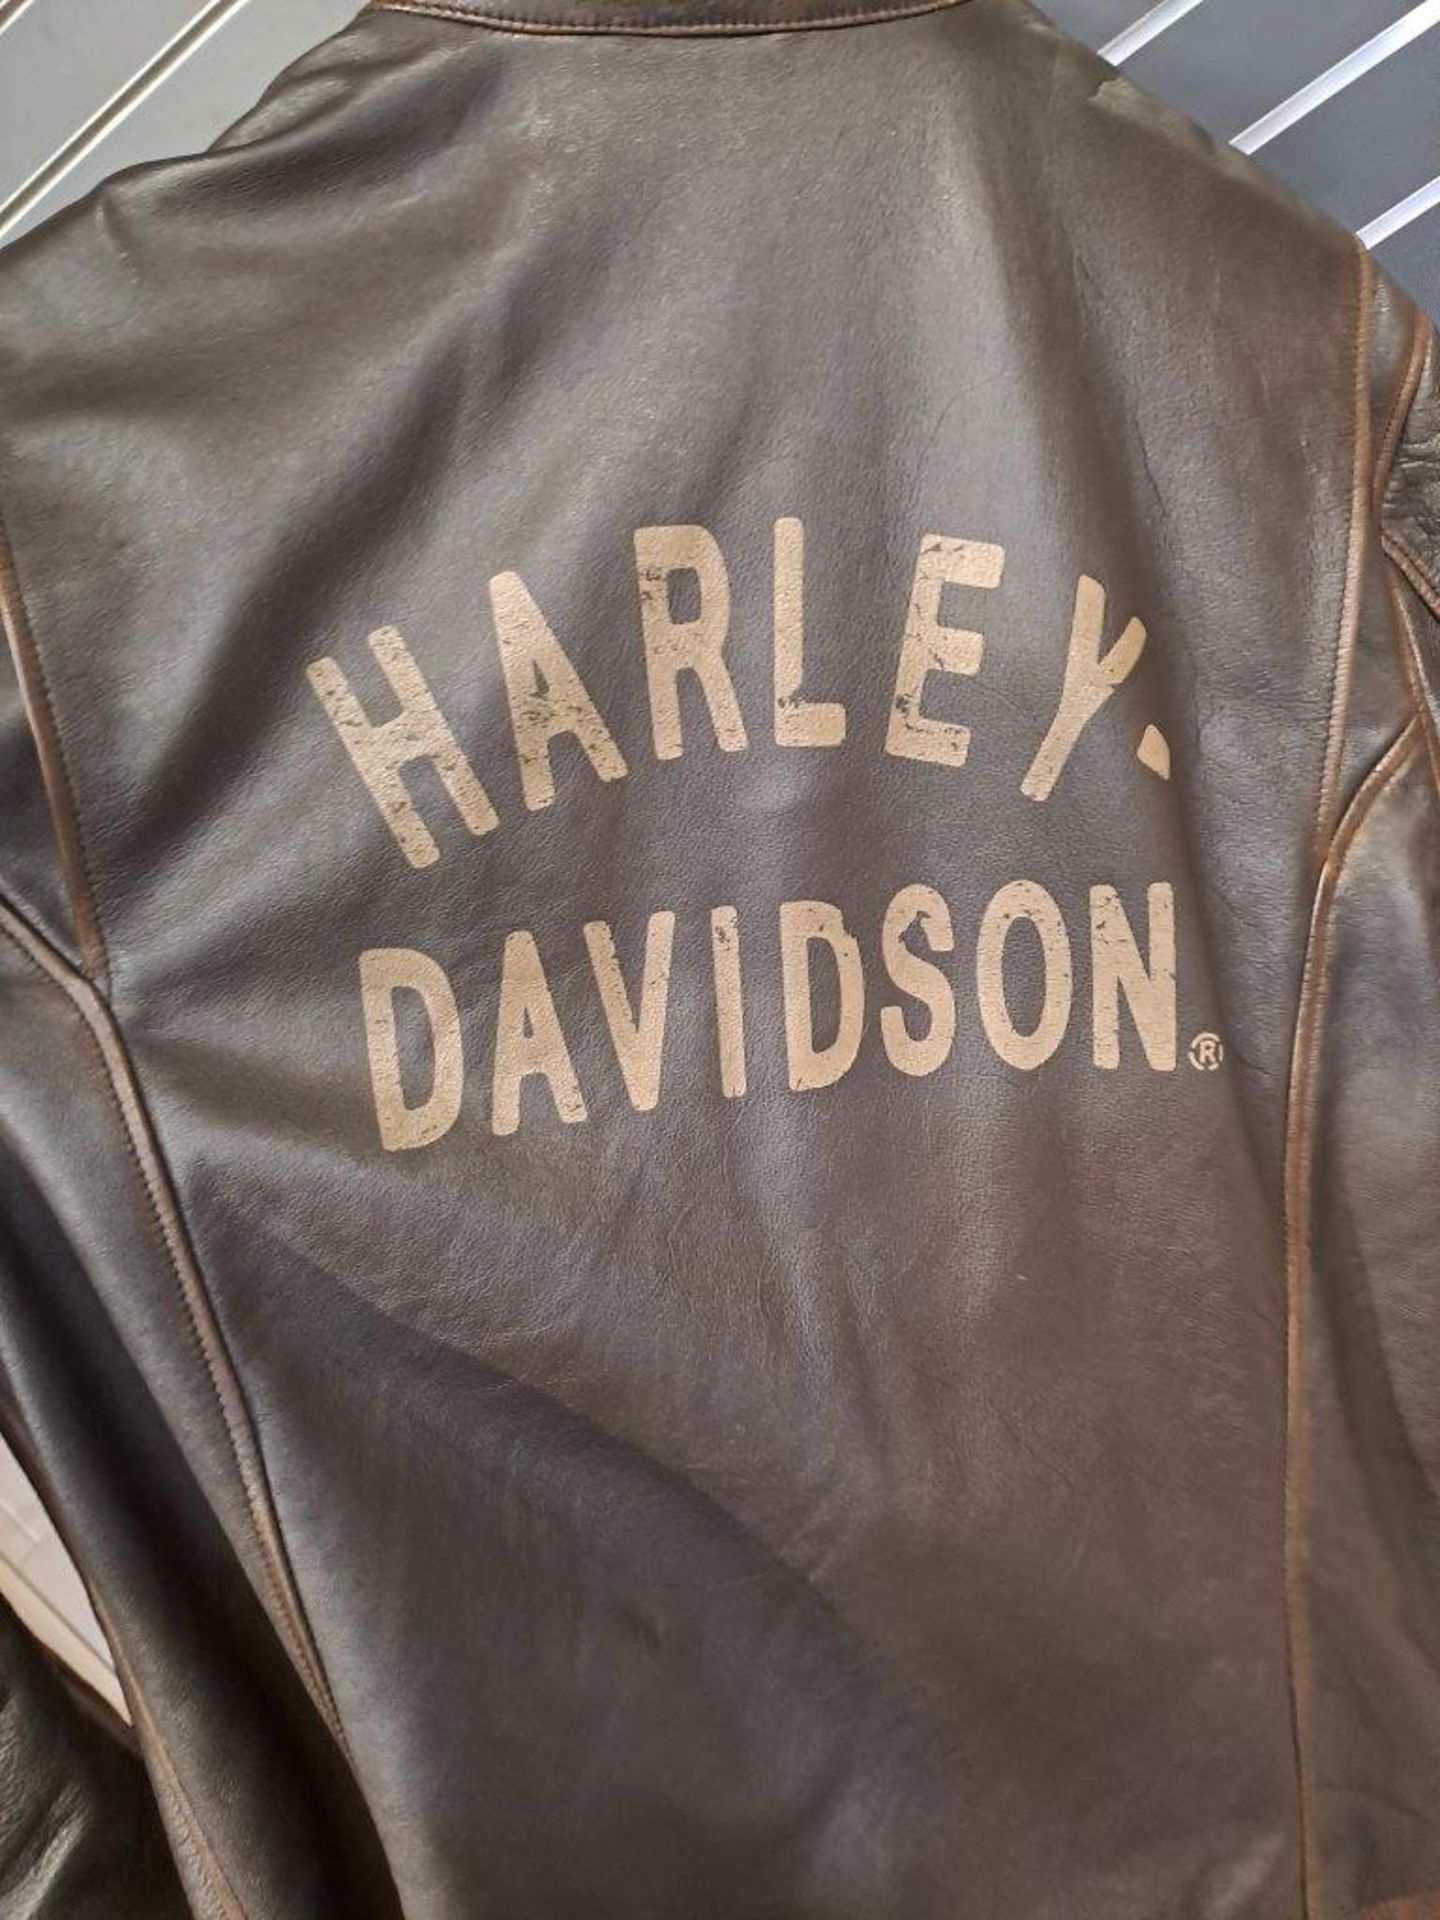 Harley Davidson Brown Leather Large Mens Jacket - Image 4 of 8